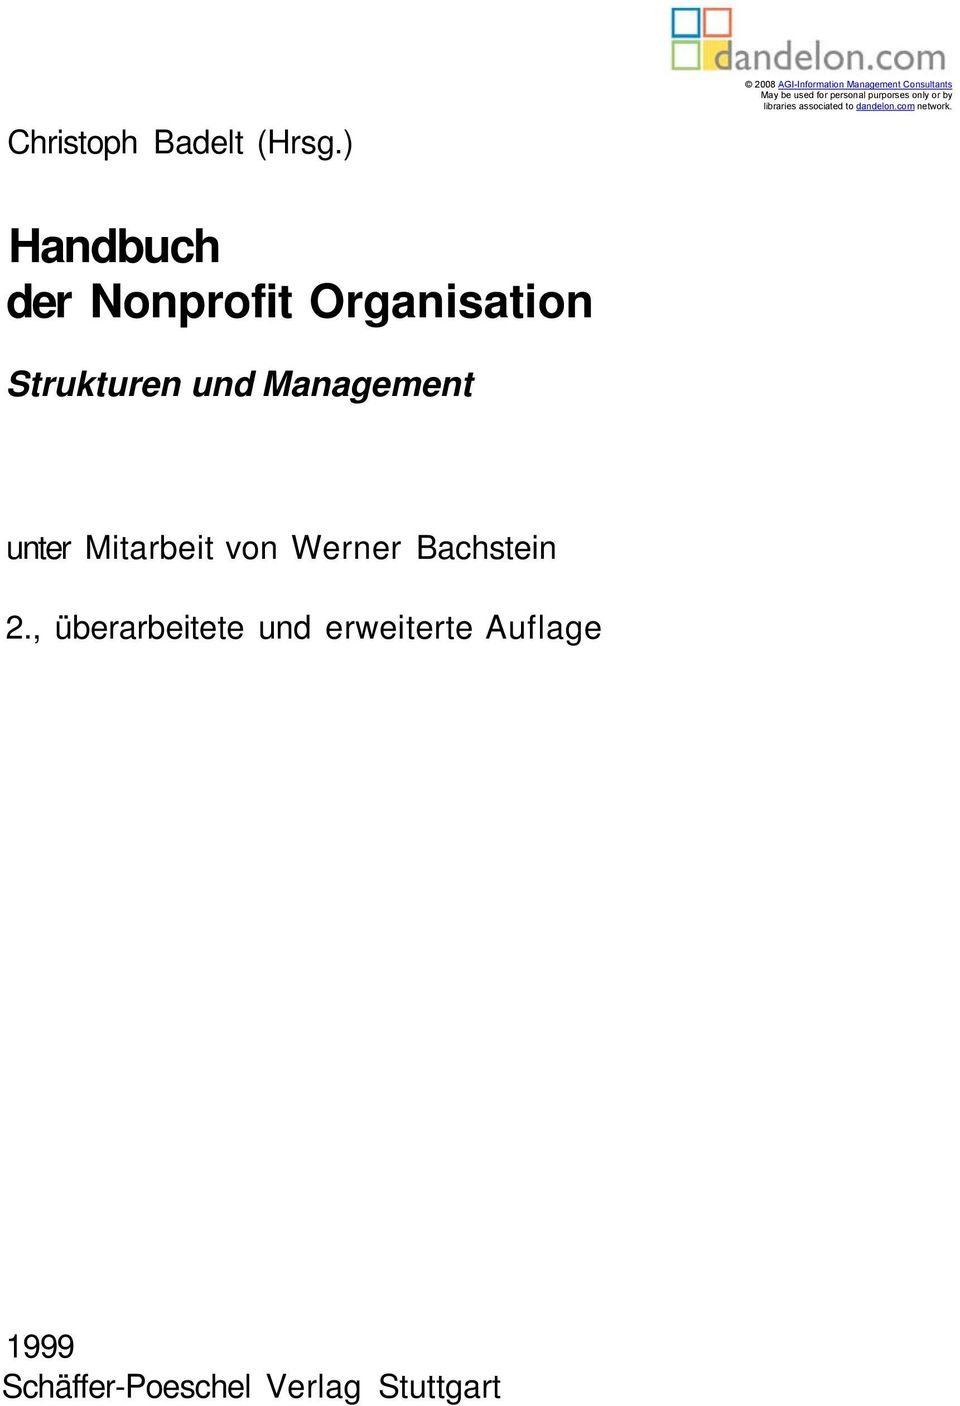 Handbuch Der Nonprofit Organisation Pdf Kostenfreier Download